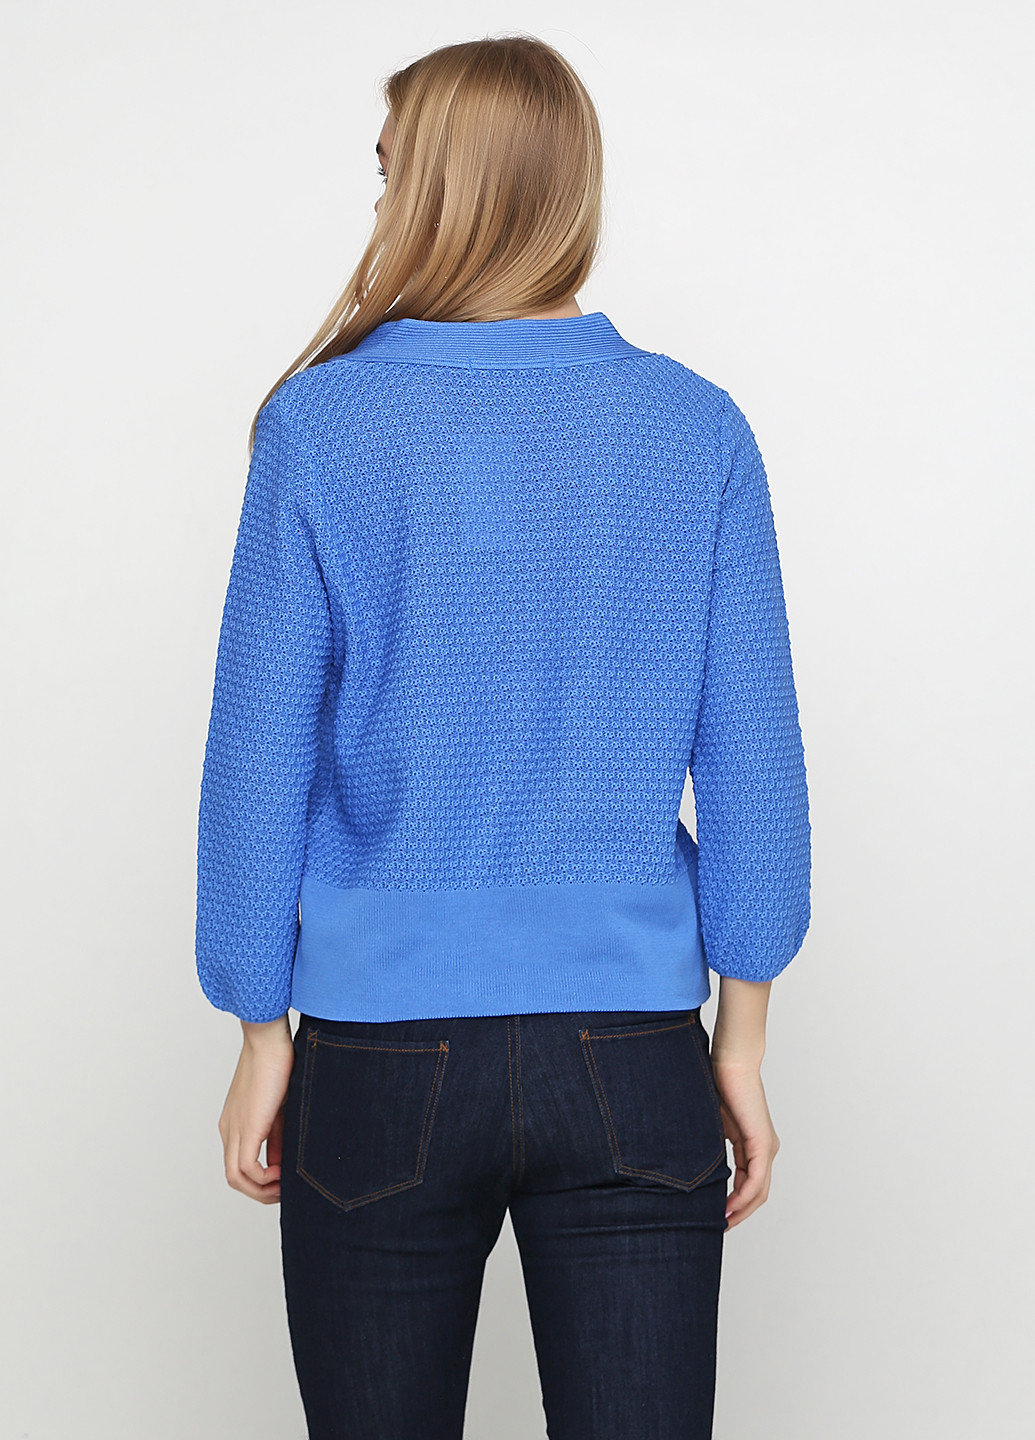 Голубой демисезонный пуловер пуловер Skovhuus